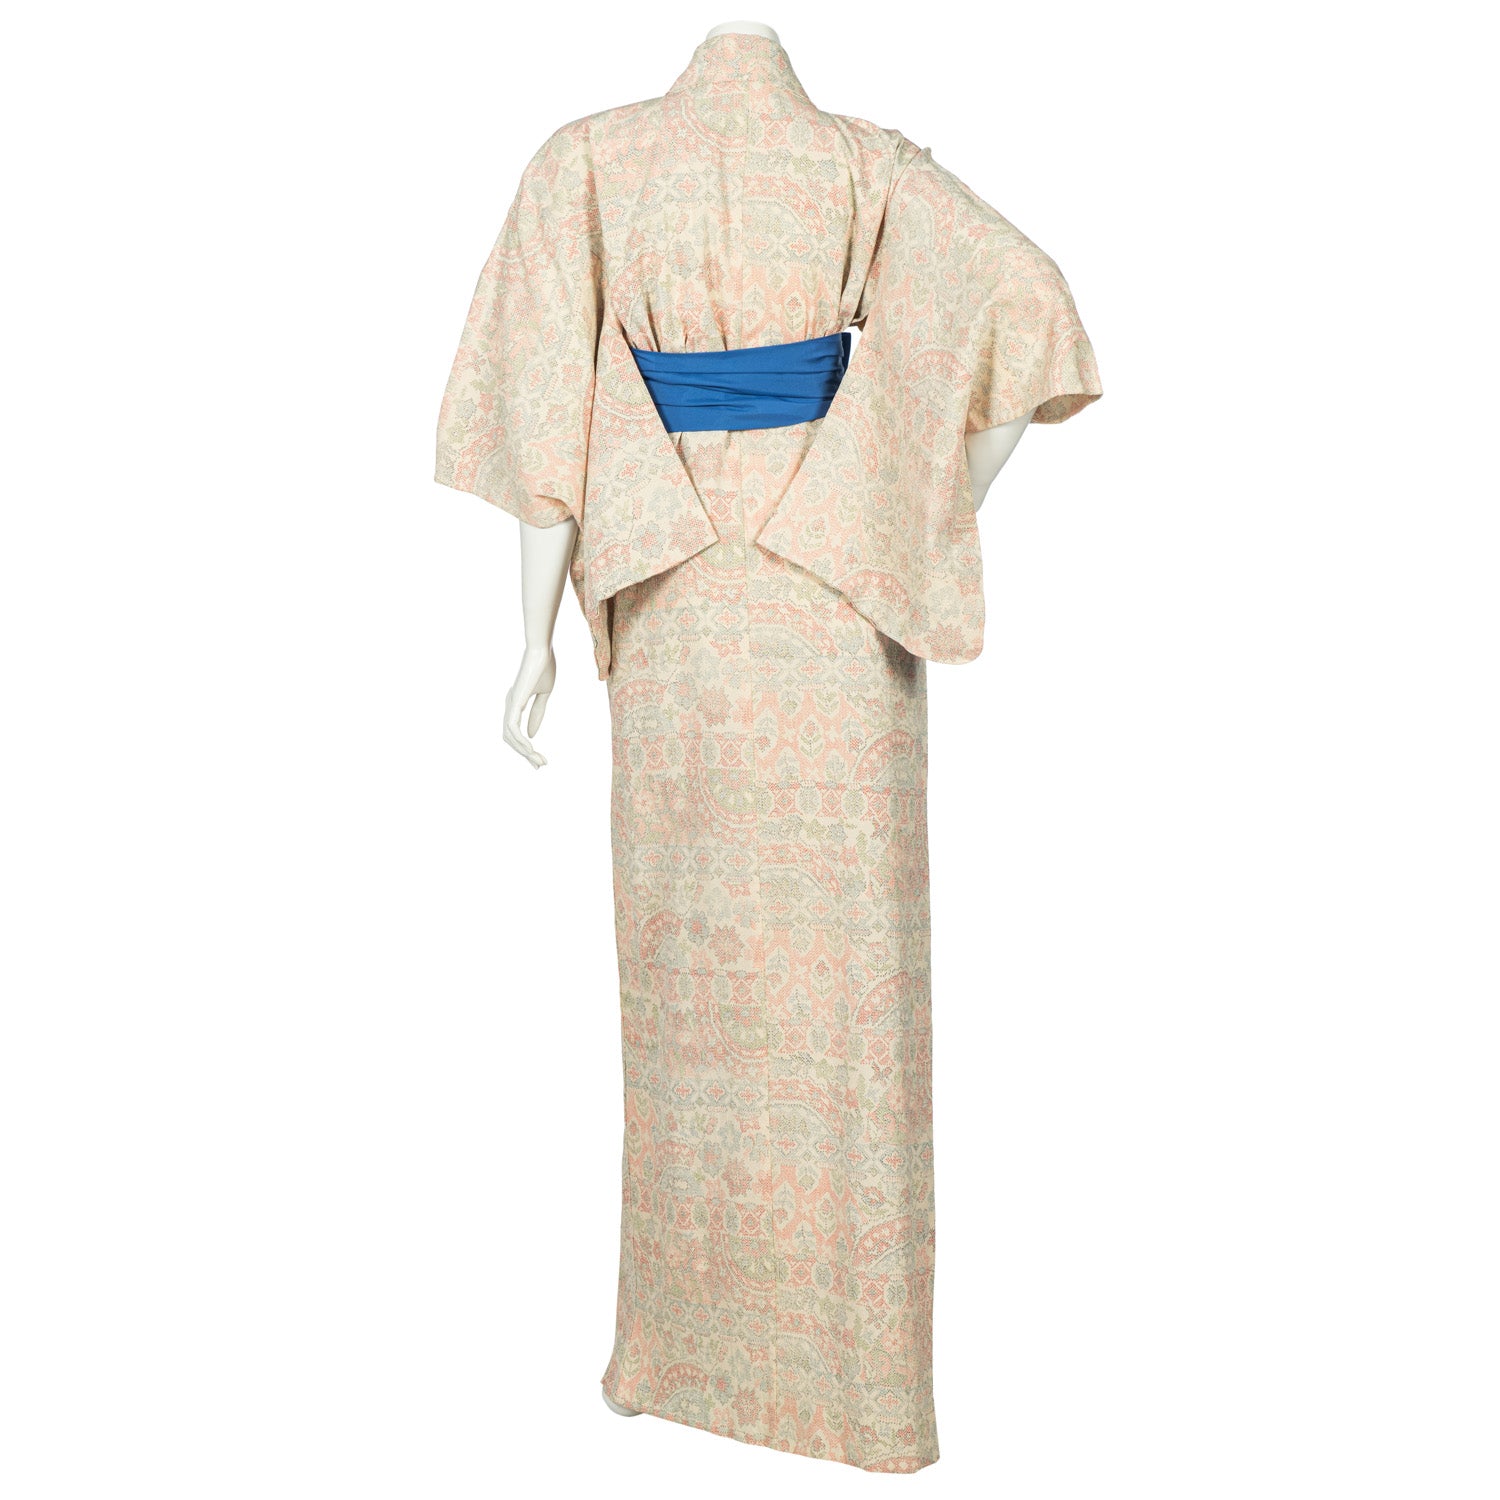 Echizen Vintage Japanese Kimono Robe